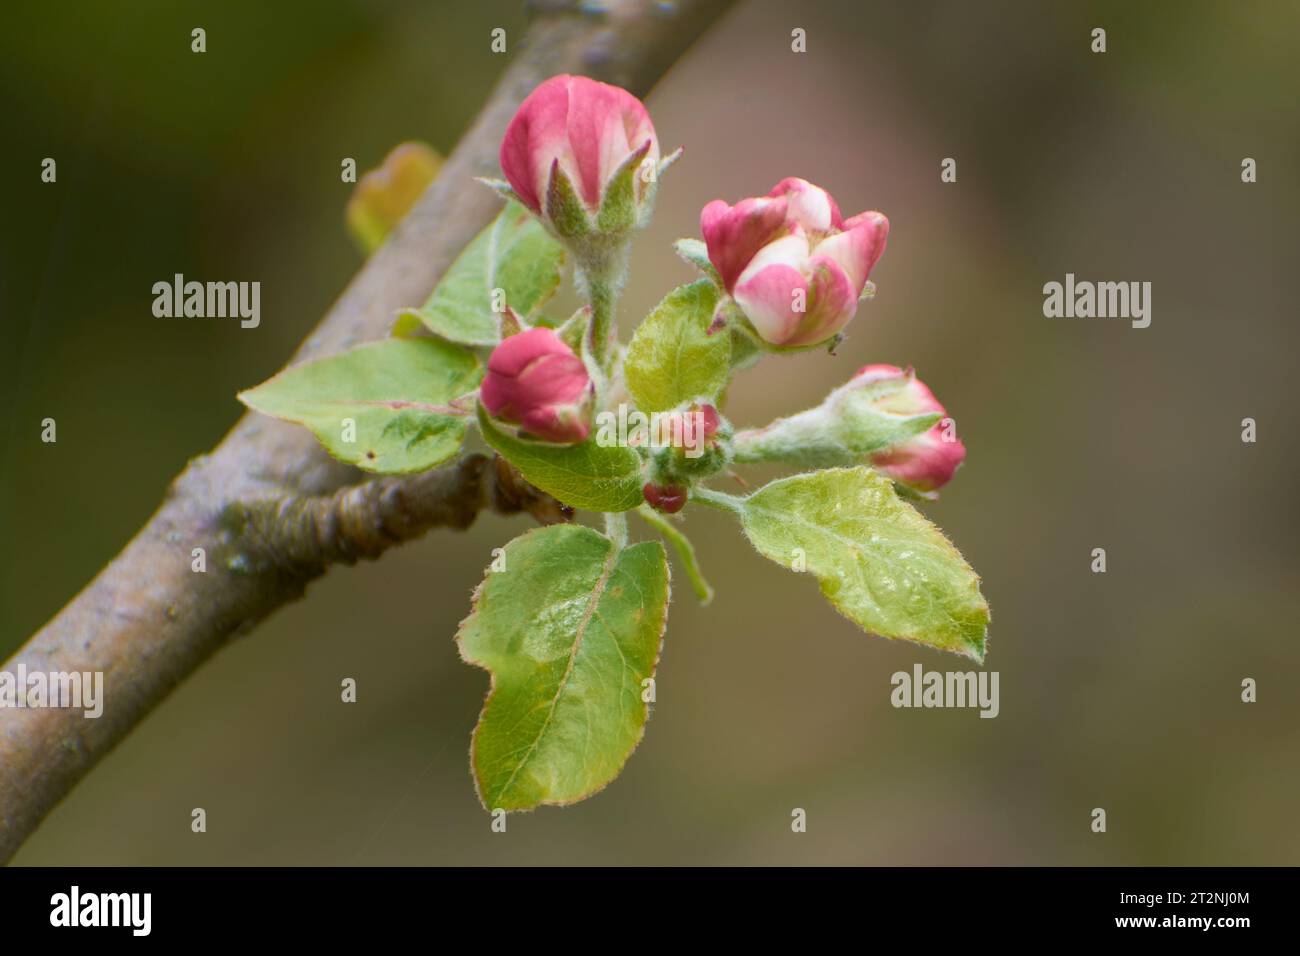 Wunderschöne Fotos aus dem Garten mit Apfelblumen Stockfoto